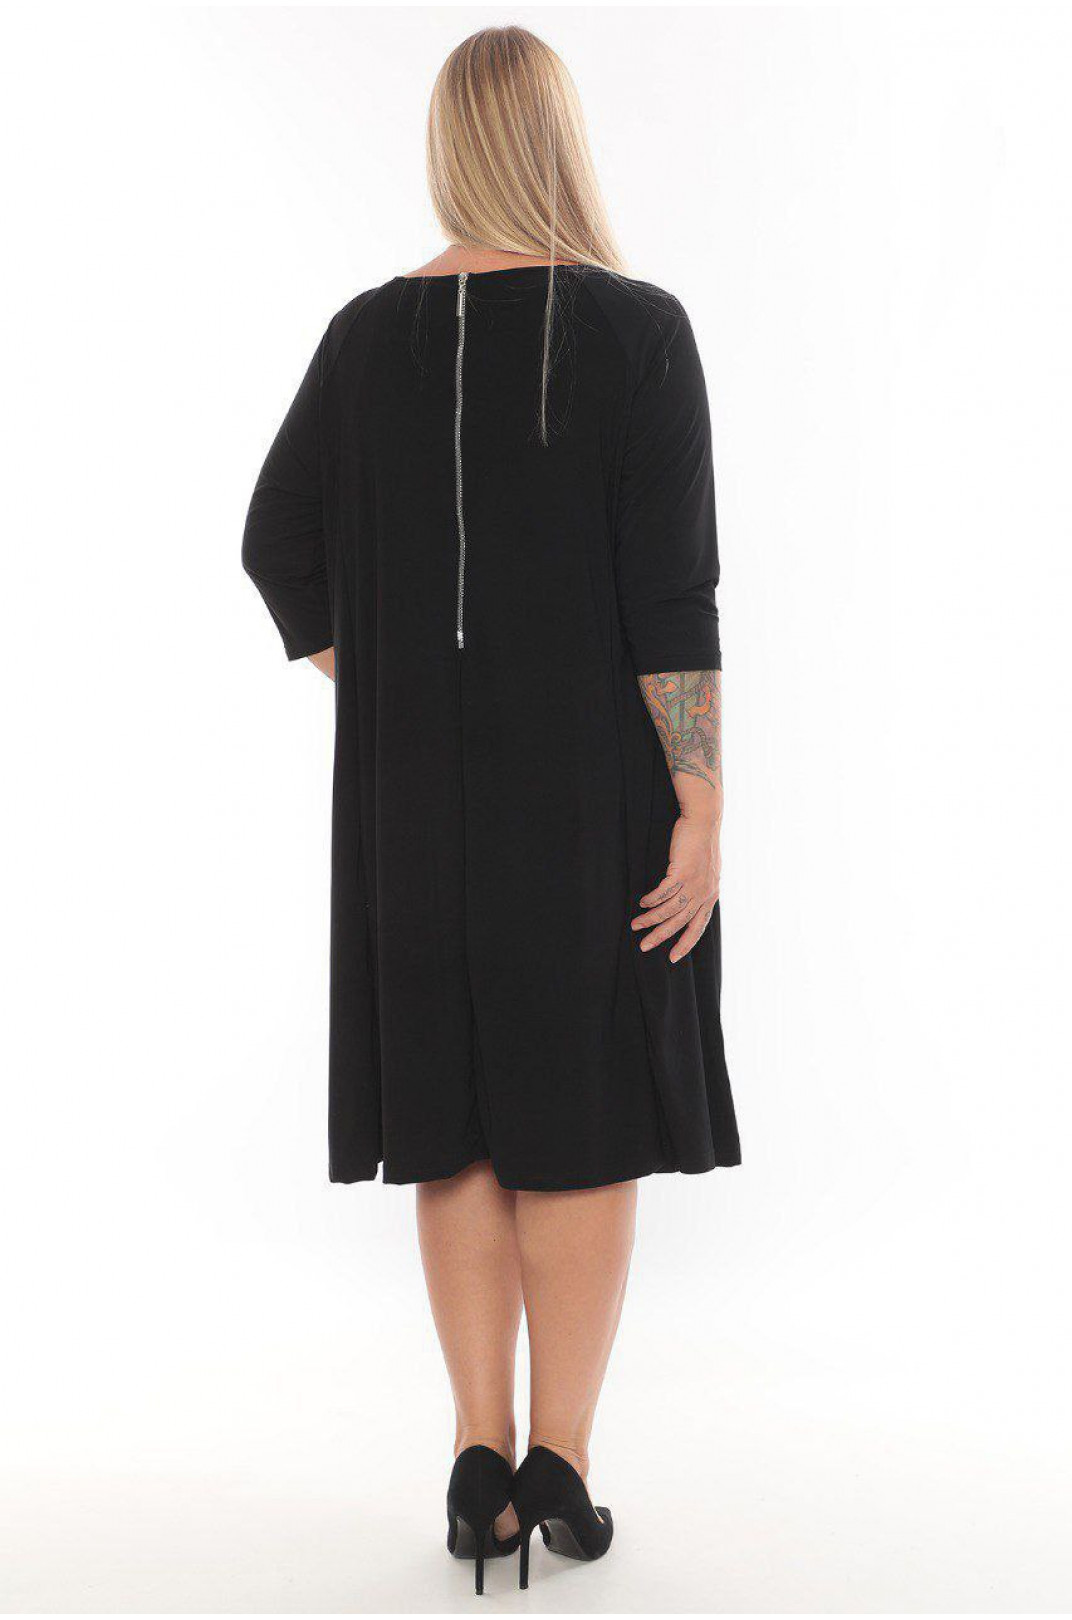 Классическое черное платье с молнией на спине супер батал